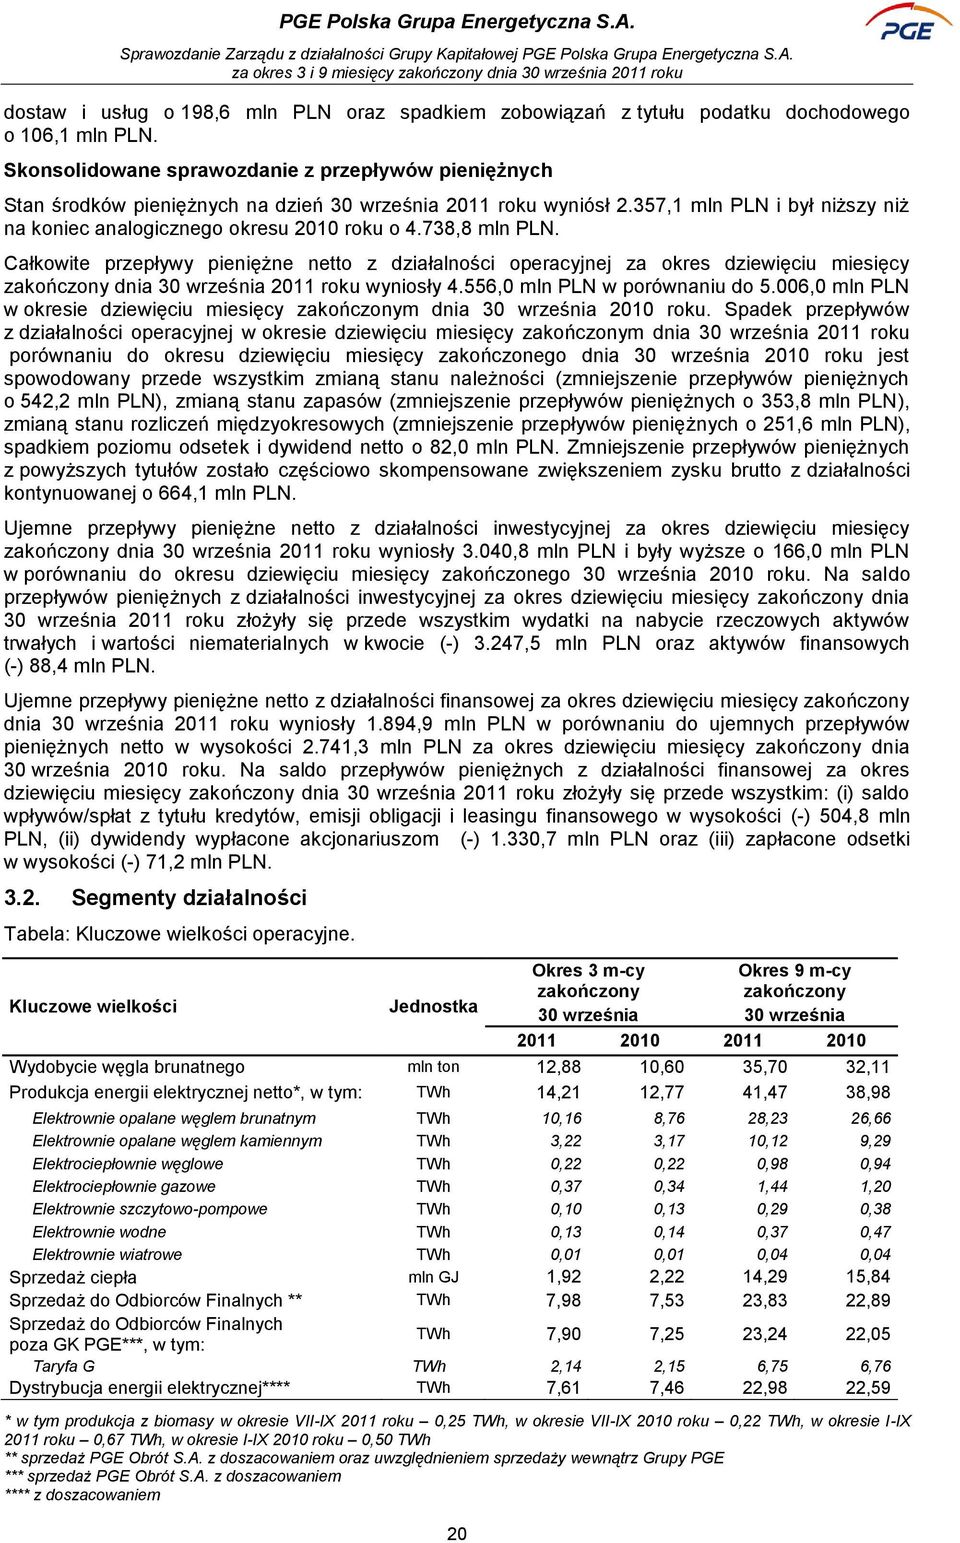 738,8 mln PLN. Całkowite przepływy pieniężne netto z działalności operacyjnej za okres dziewięciu miesięcy zakończony dnia 30 września 2011 roku wyniosły 4.556,0 mln PLN w porównaniu do 5.